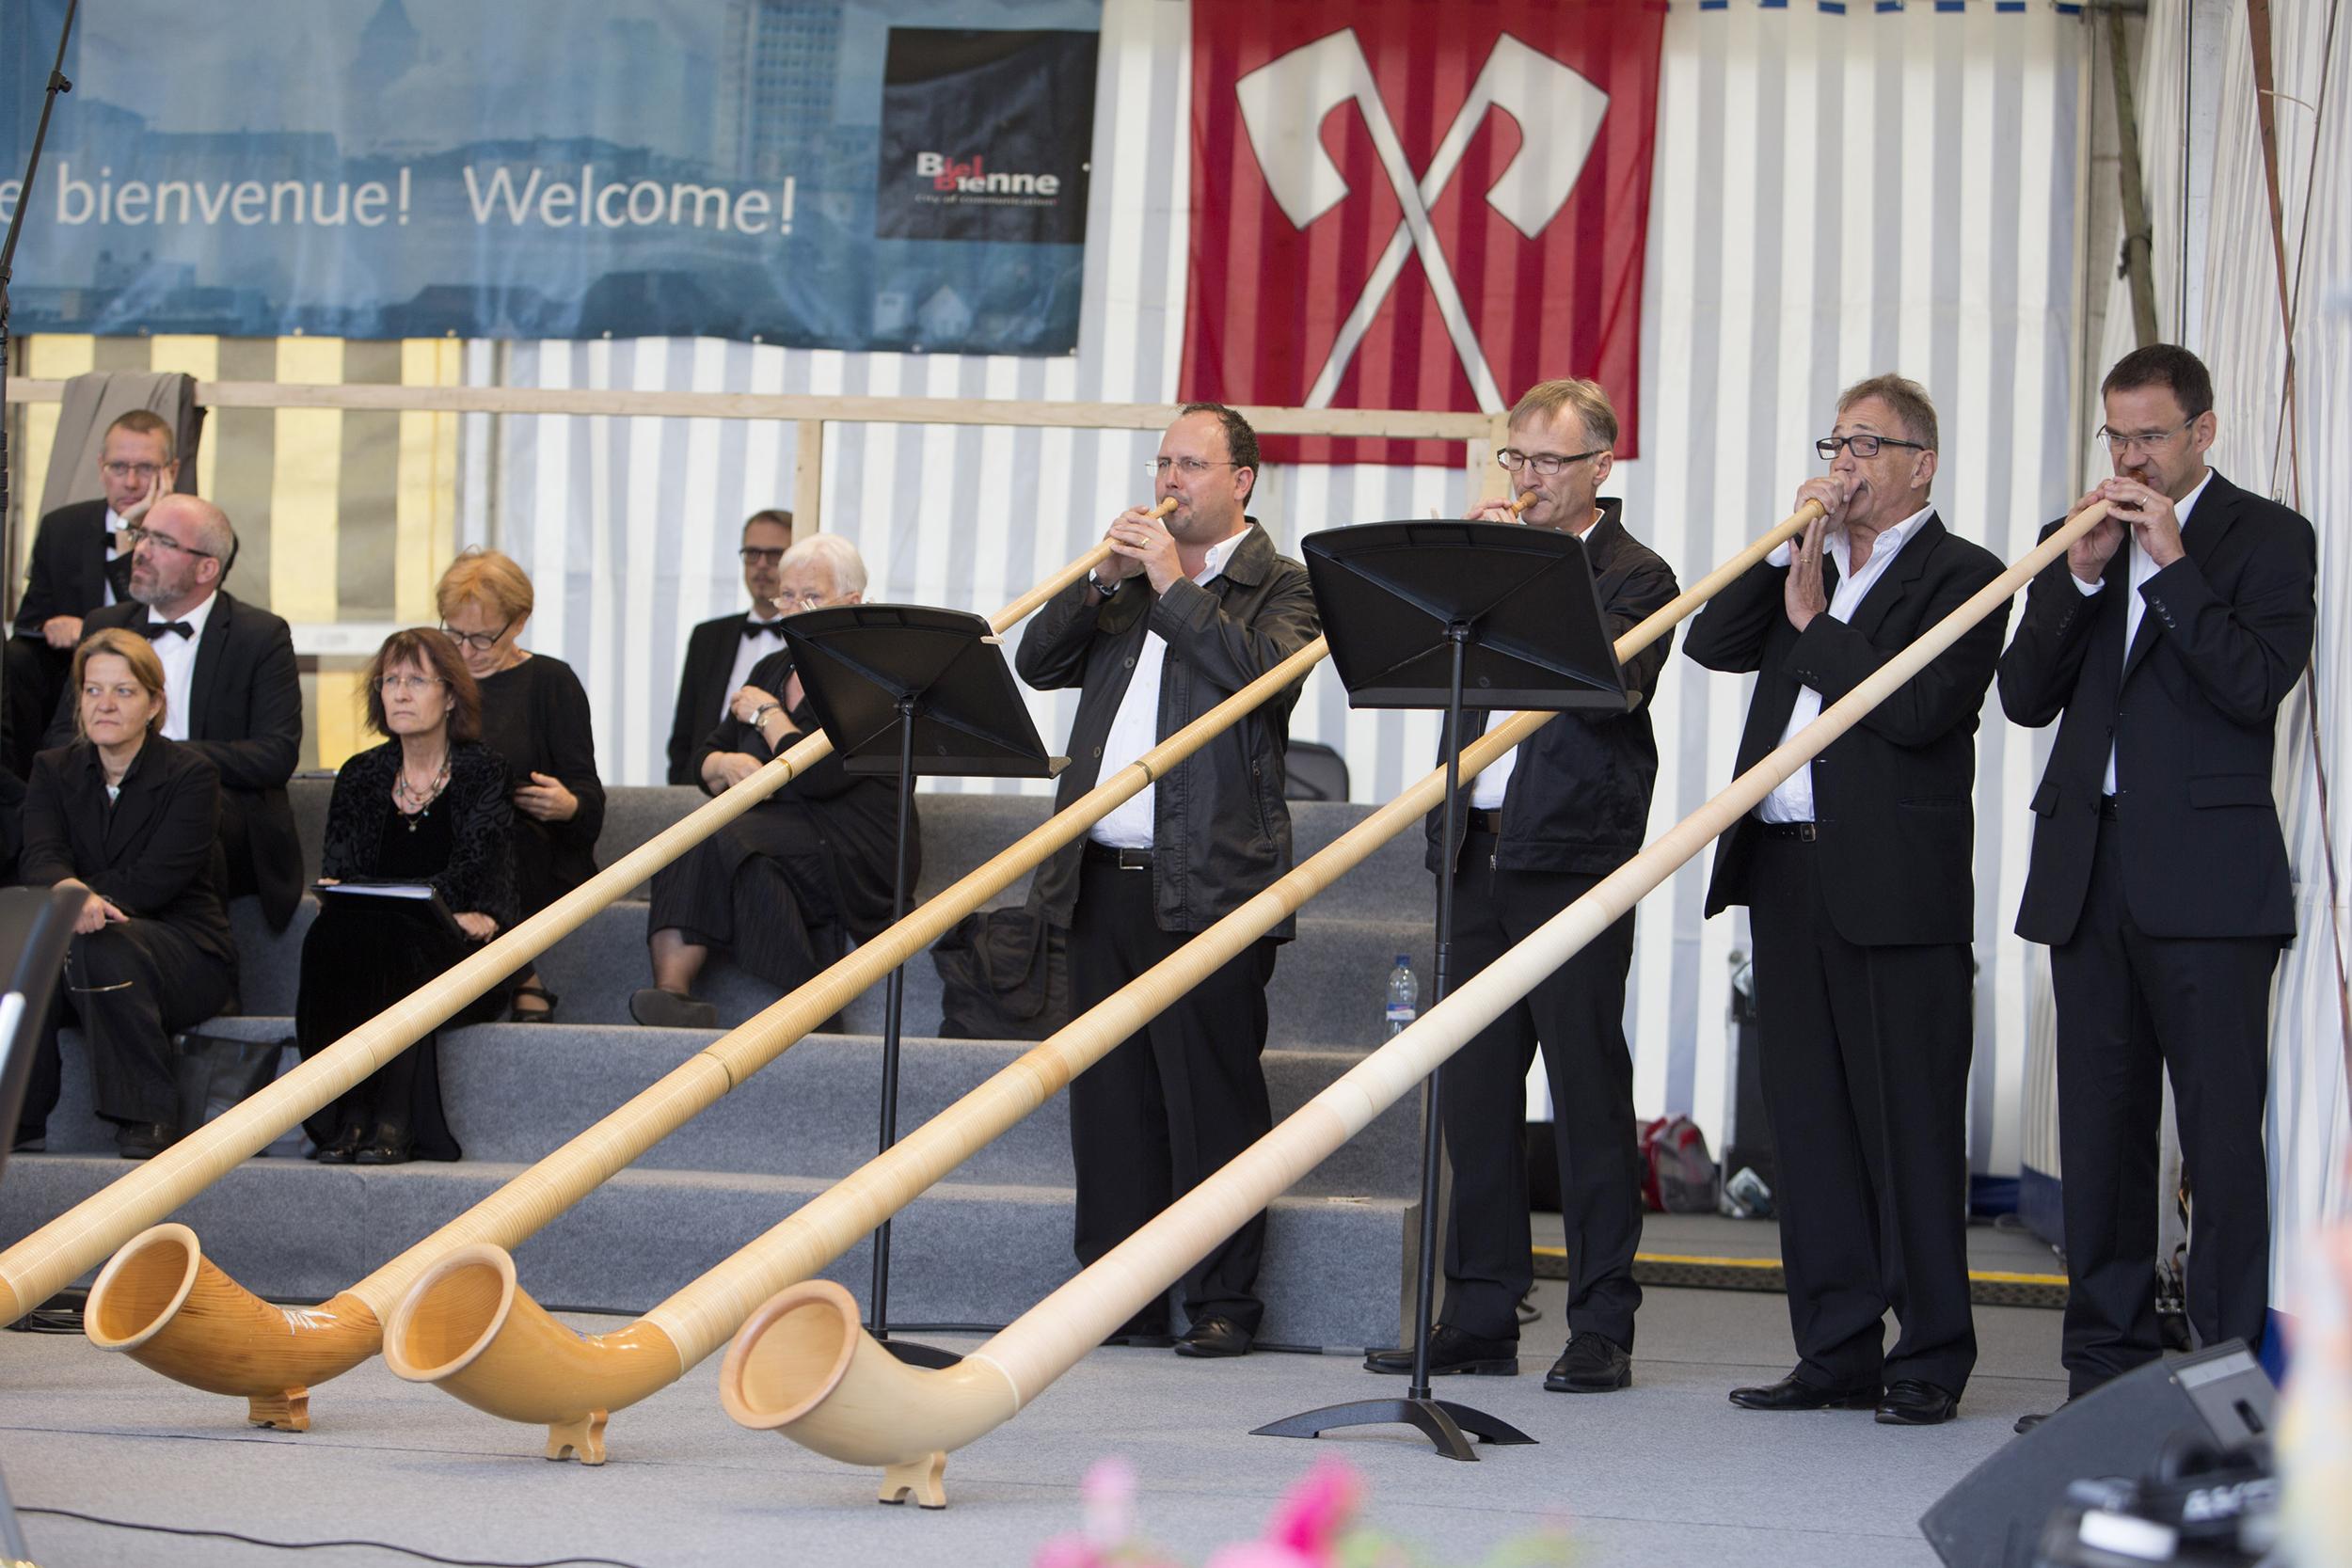 Le Kiosque à Musiques à la Schubertiade à Bienne - 5 septembre 2015 - Quatuor de cors des Alpes "Surental". [RTS - CHRISTIN Philippe]